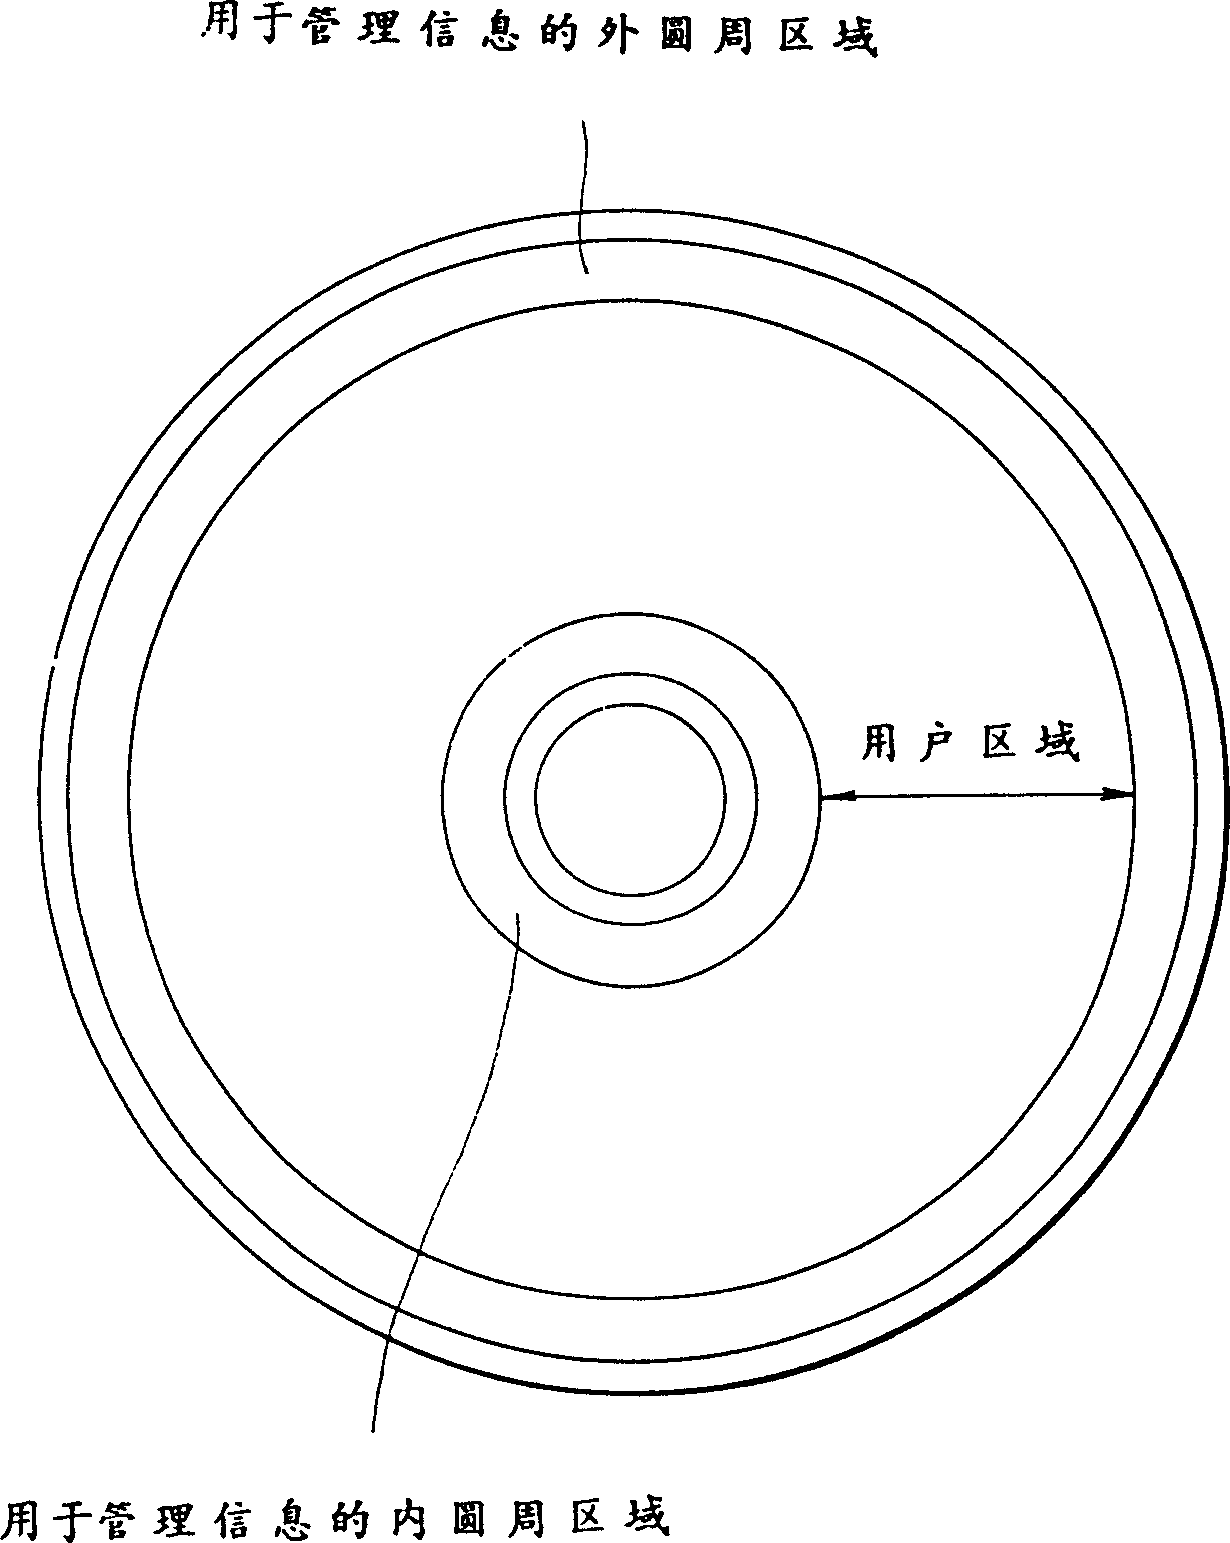 Optical disc and optical disc drive